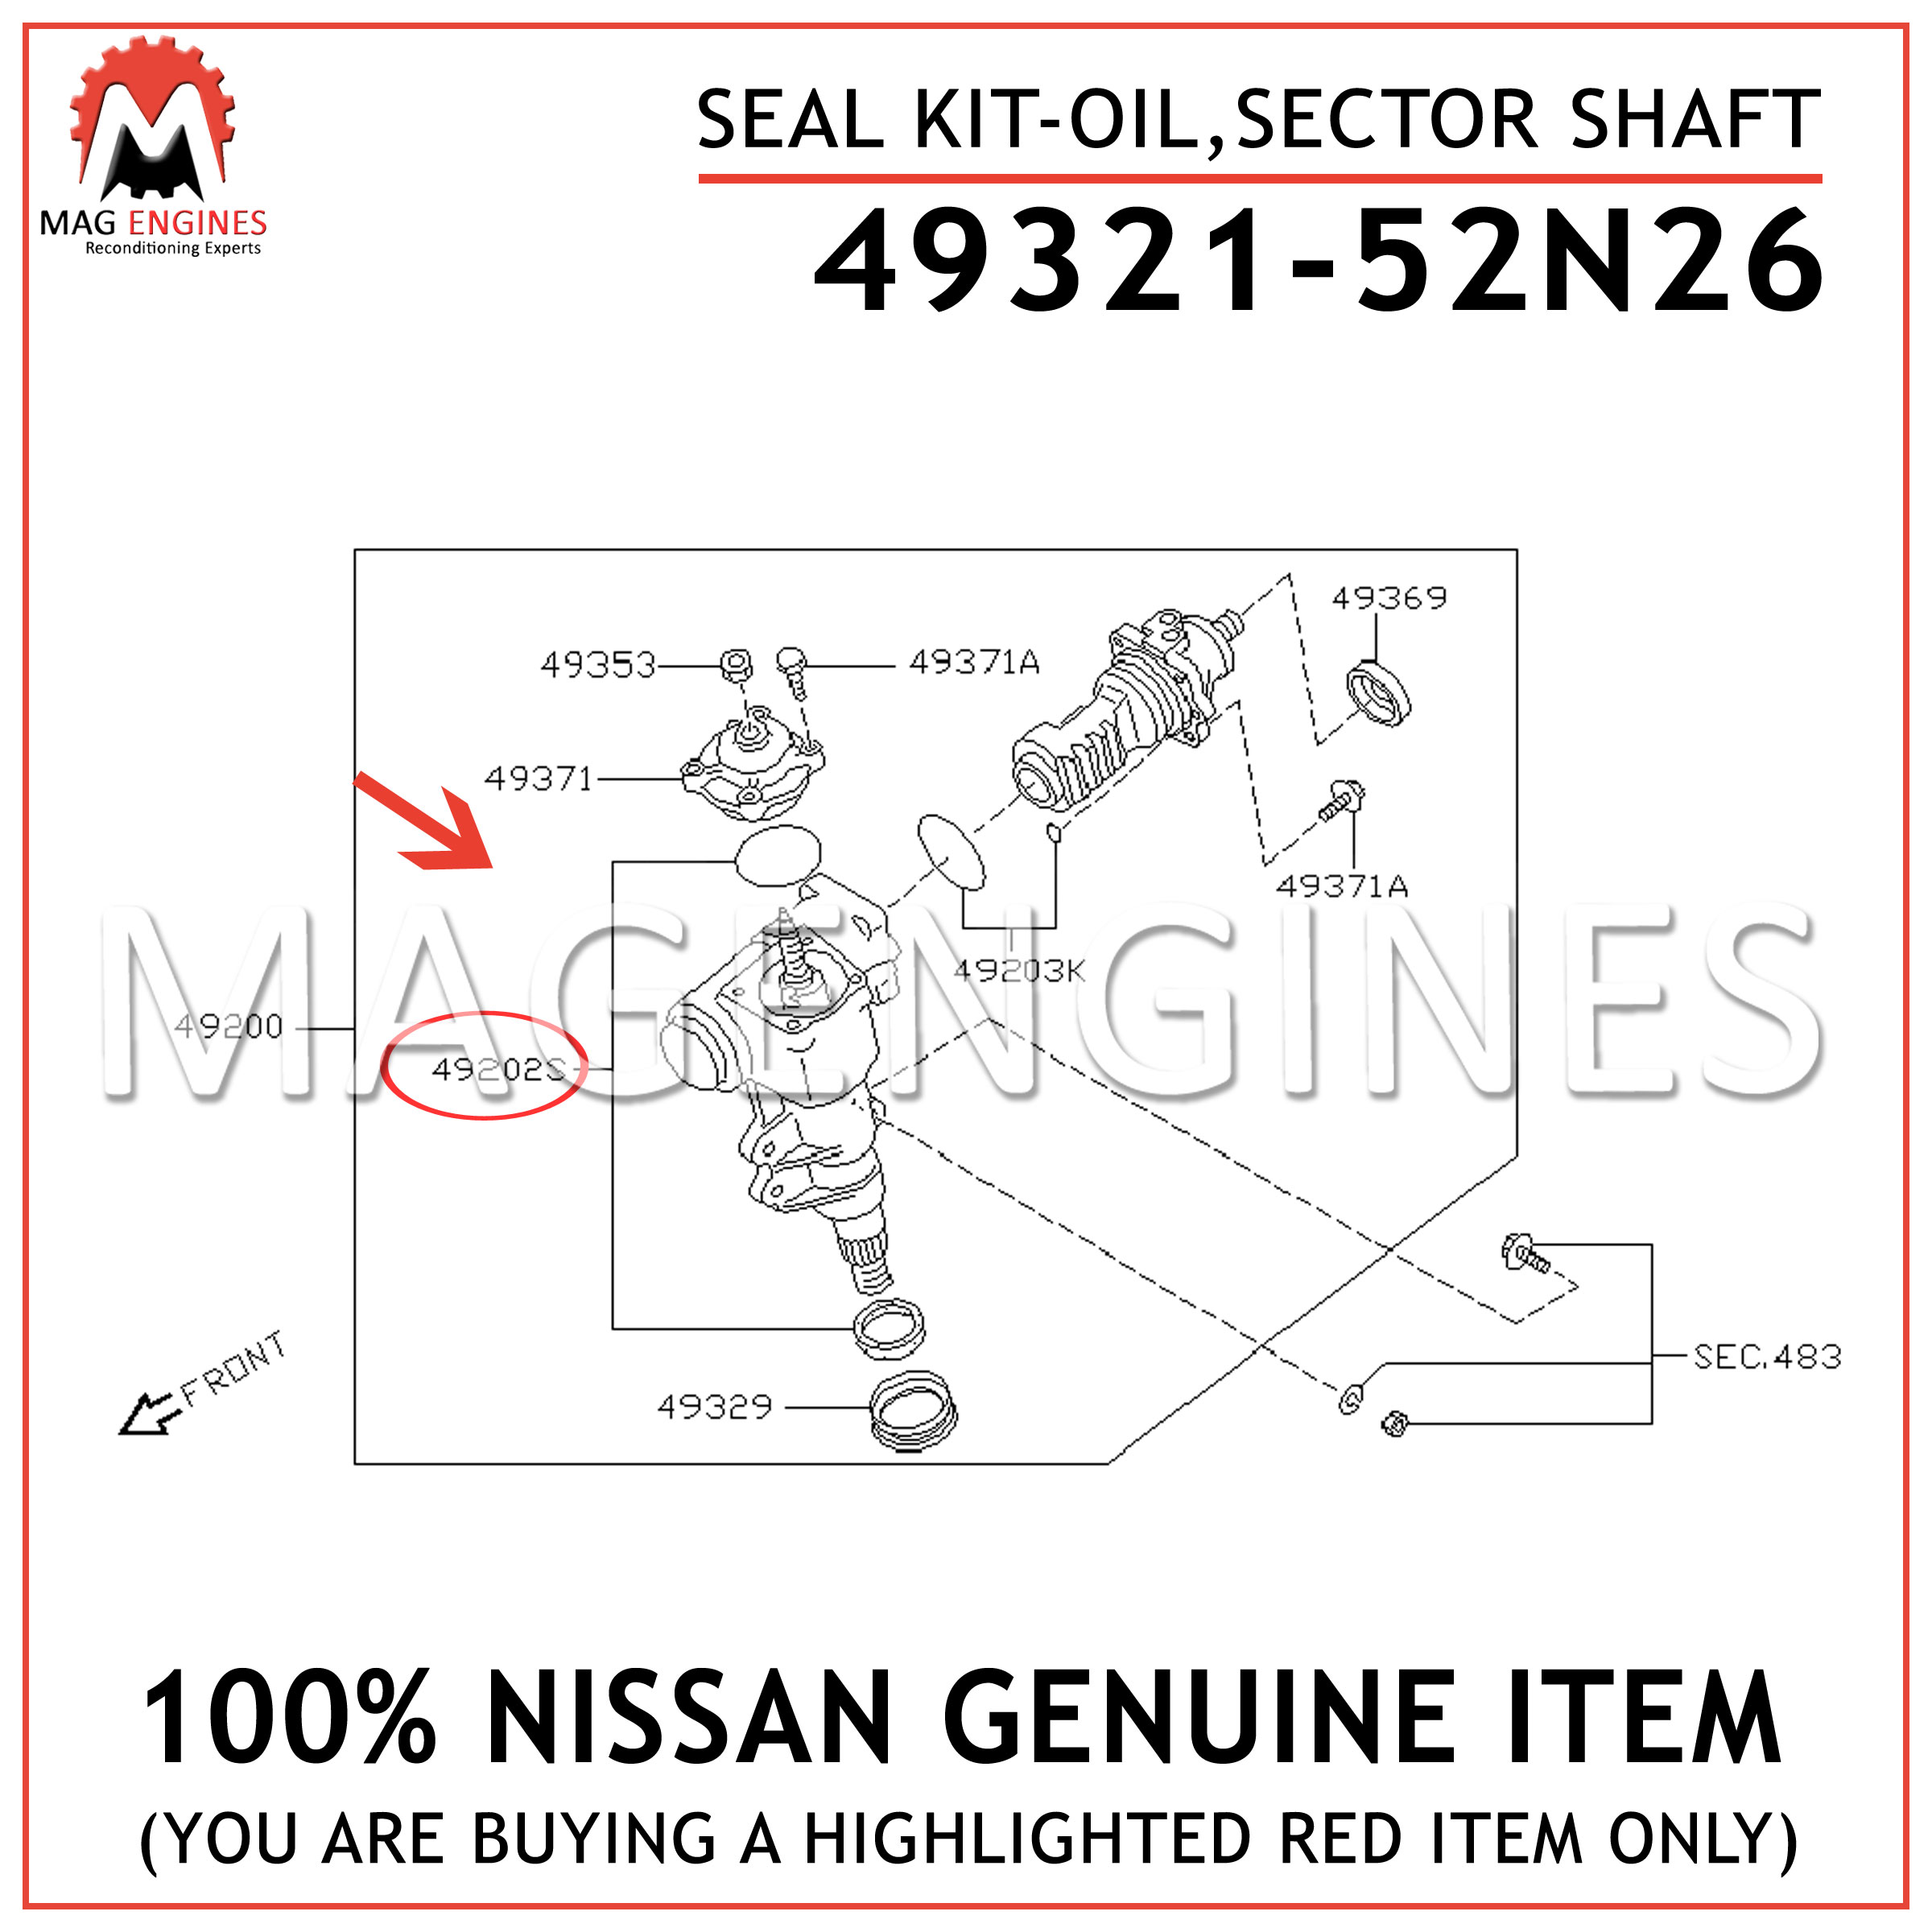 49321-52N26-NISSAN-GENUINE-SEAL-KIT-OILSECTOR-SHAFT-4932152N26.jpg